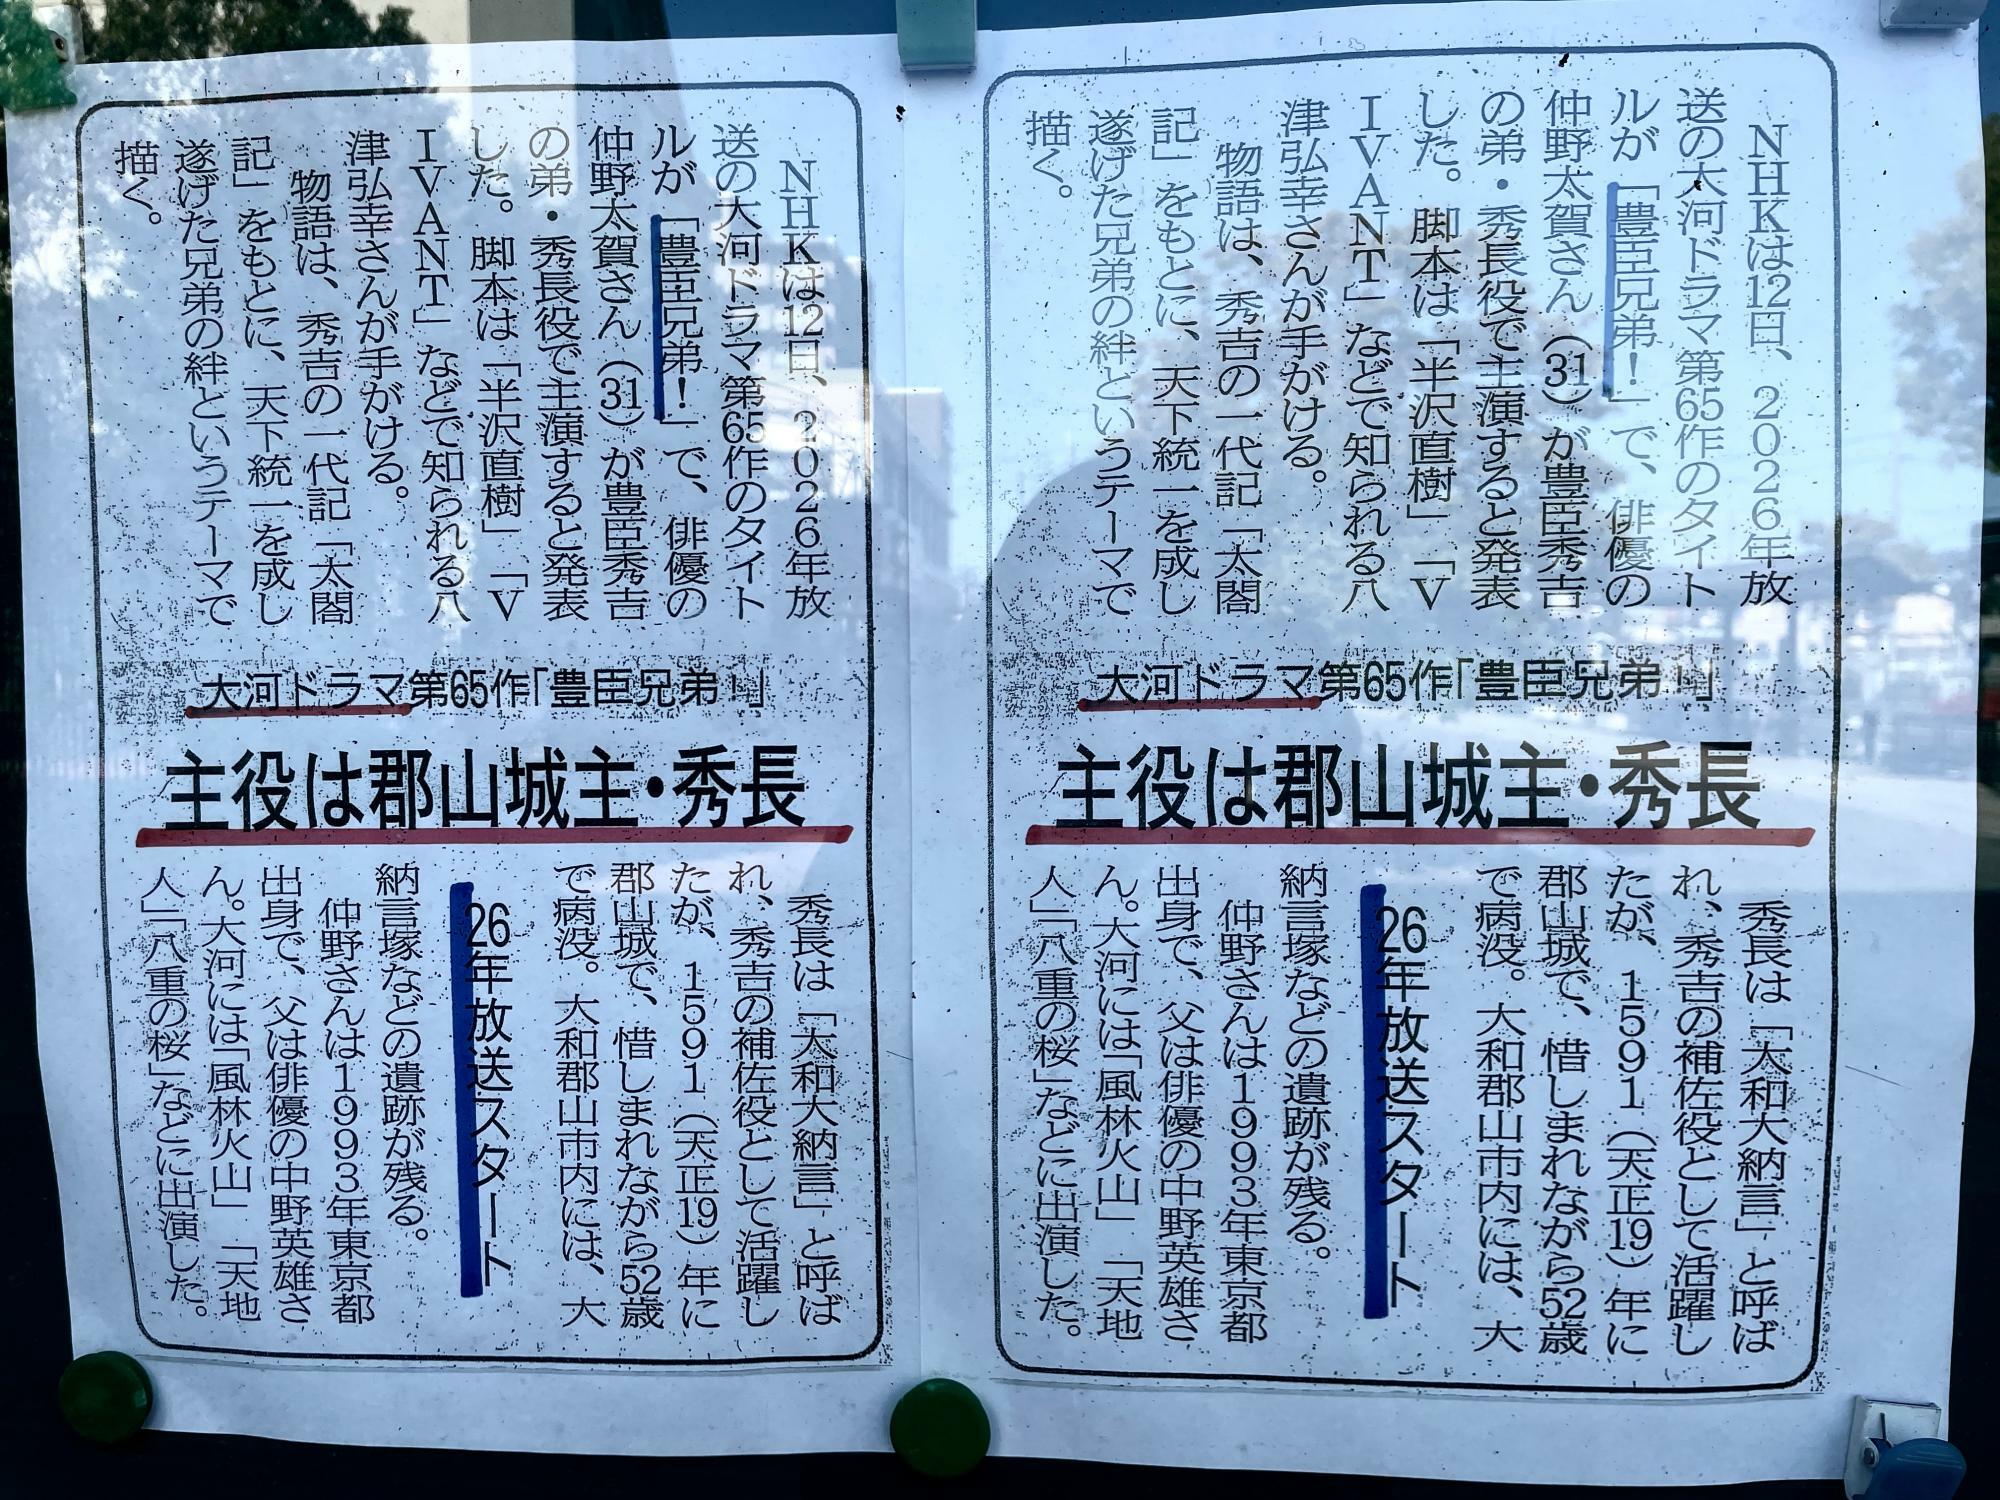 大和郡山市観光協会前に新聞の記事が掲示されていました